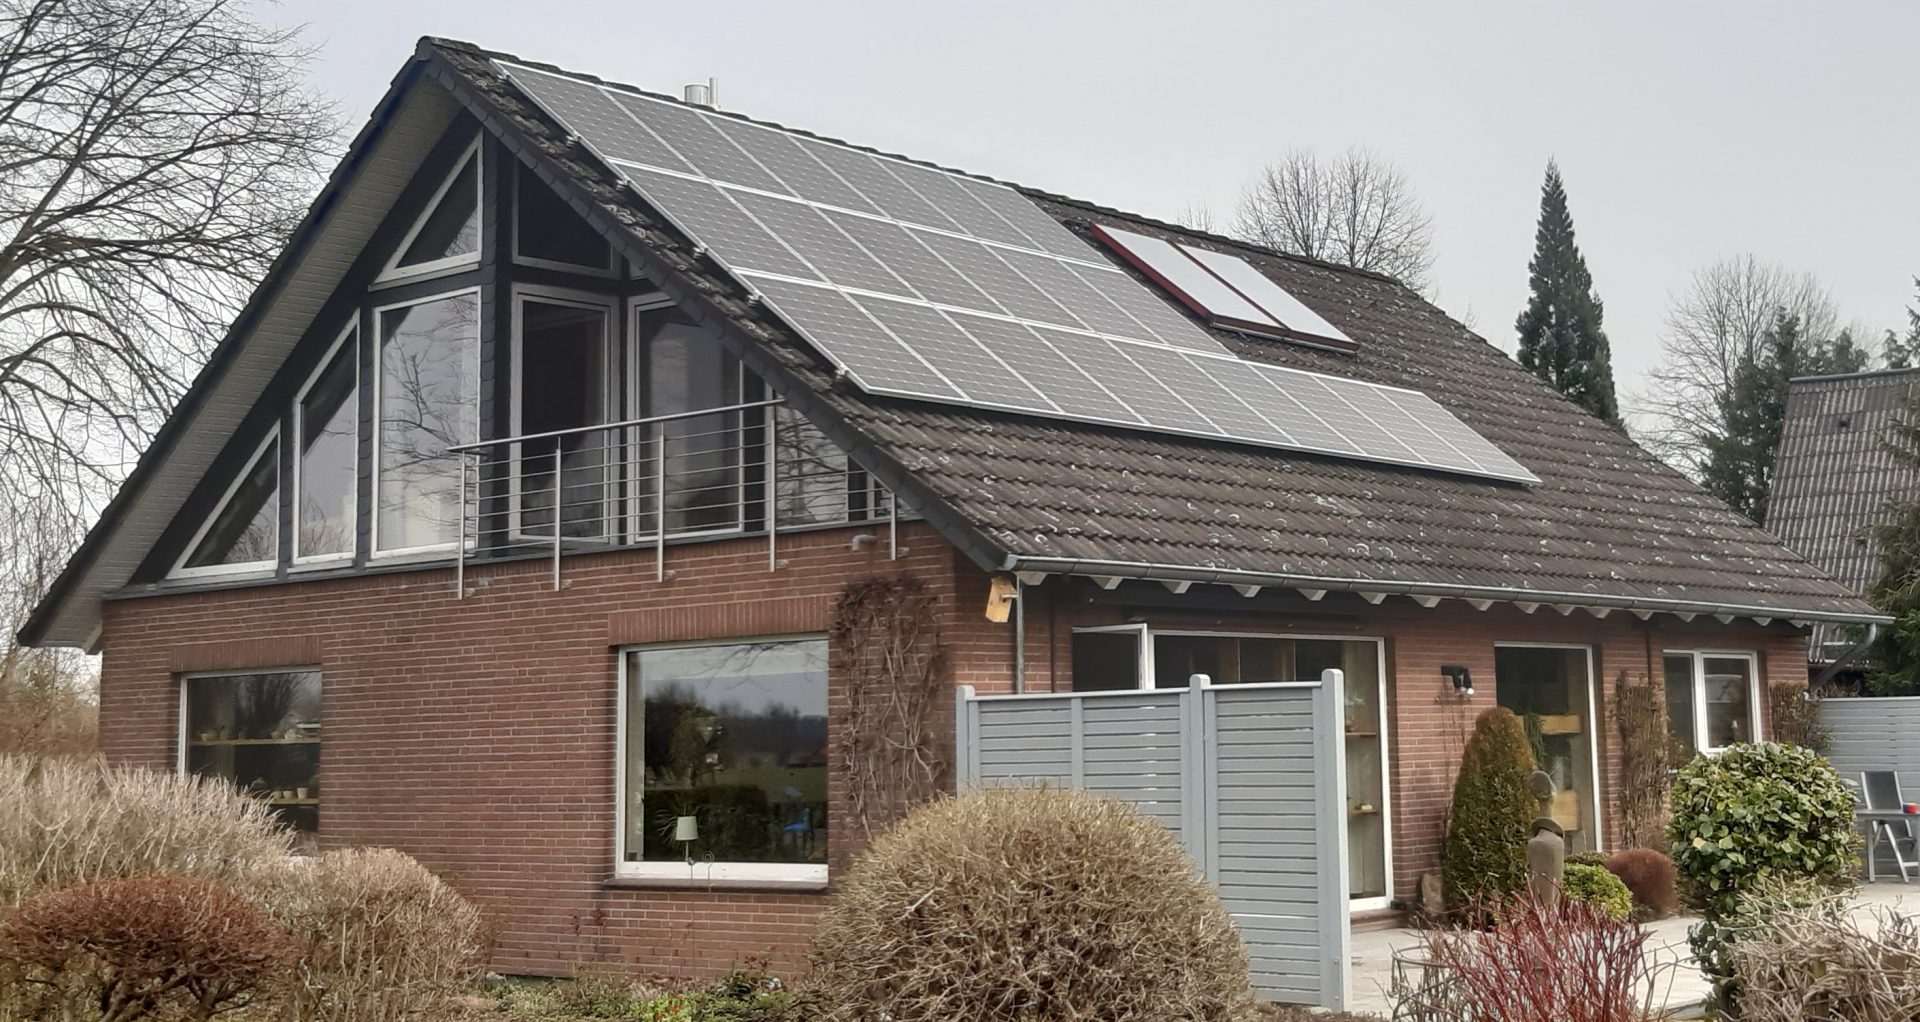 Henke Solartechnik für Schaumburg - Photovoltaik-Anlage 6,51 kWp in Hespe (Landkeis Schaumburg-Lippe)